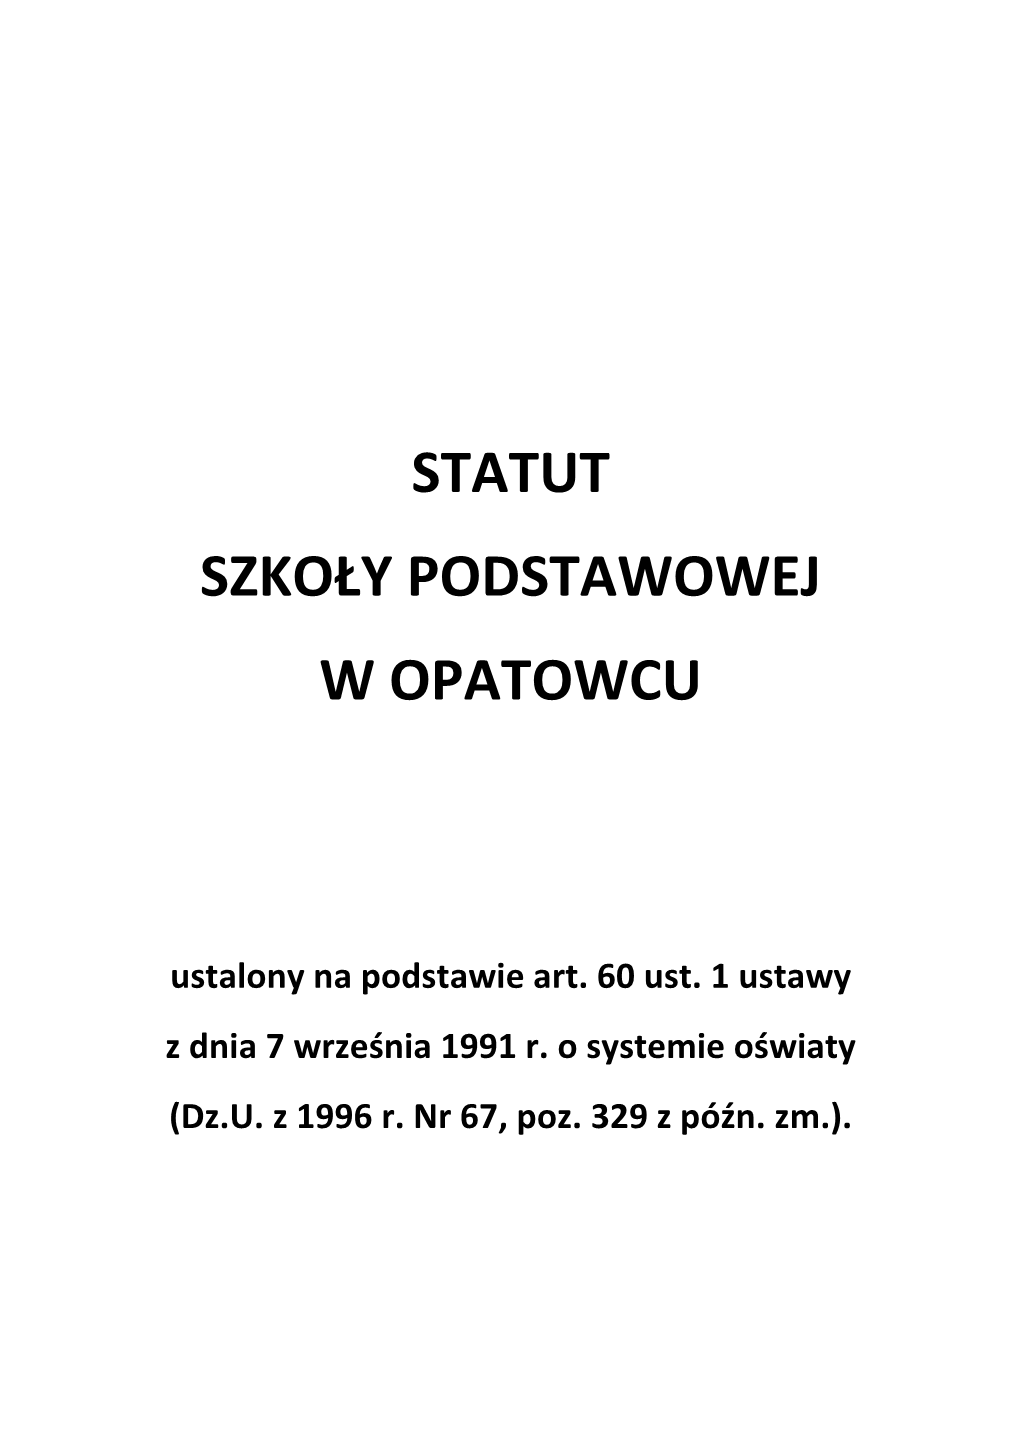 Statut Szkoły Podstawowej W Opatowcu